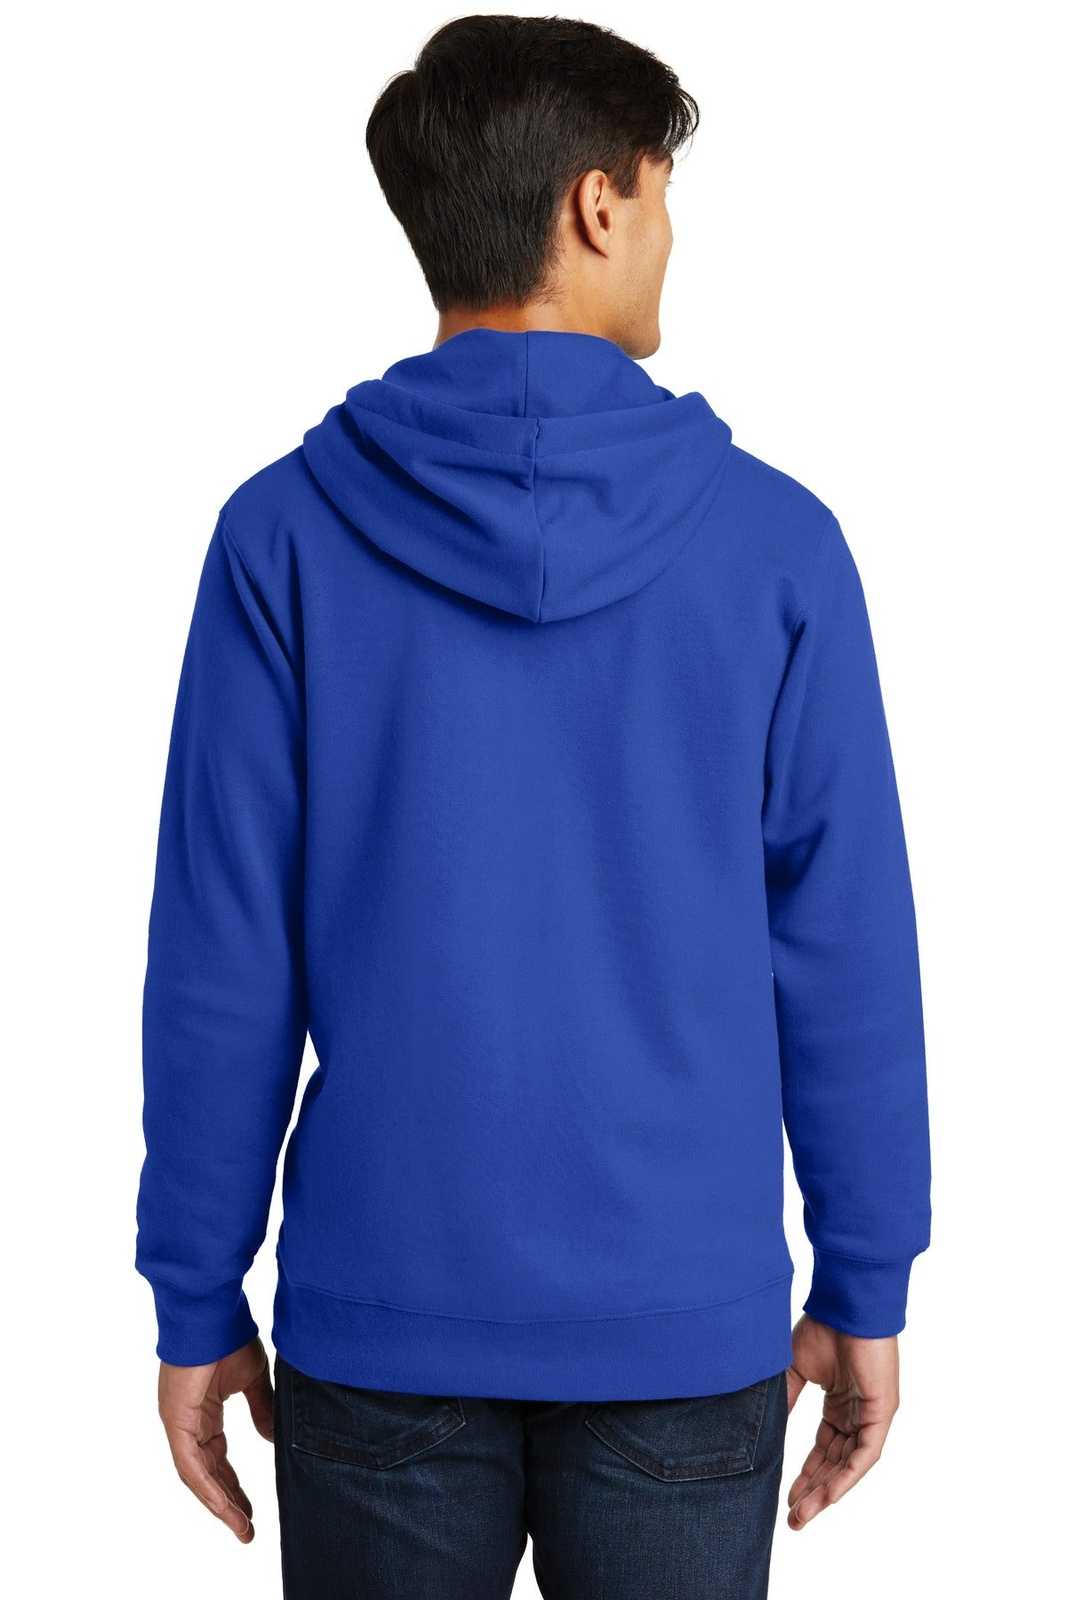 Port & Company PC850ZH Fan Favorite Fleece Full-Zip Hooded Sweatshirt - True Royal - HIT a Double - 1